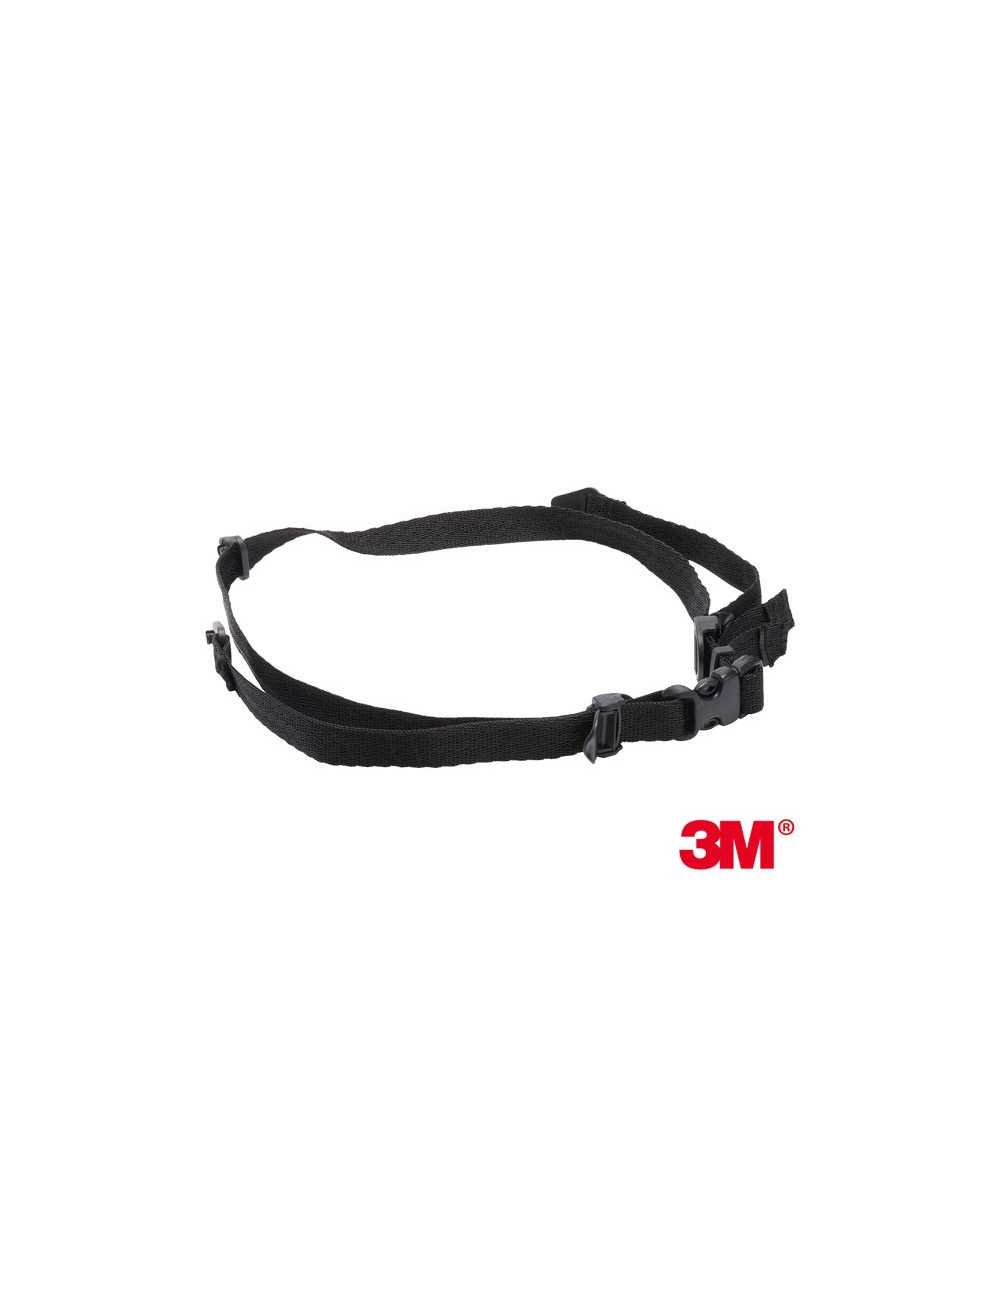 Kinnriemen für Helm B schwarz 3M 3m-strap-gh4